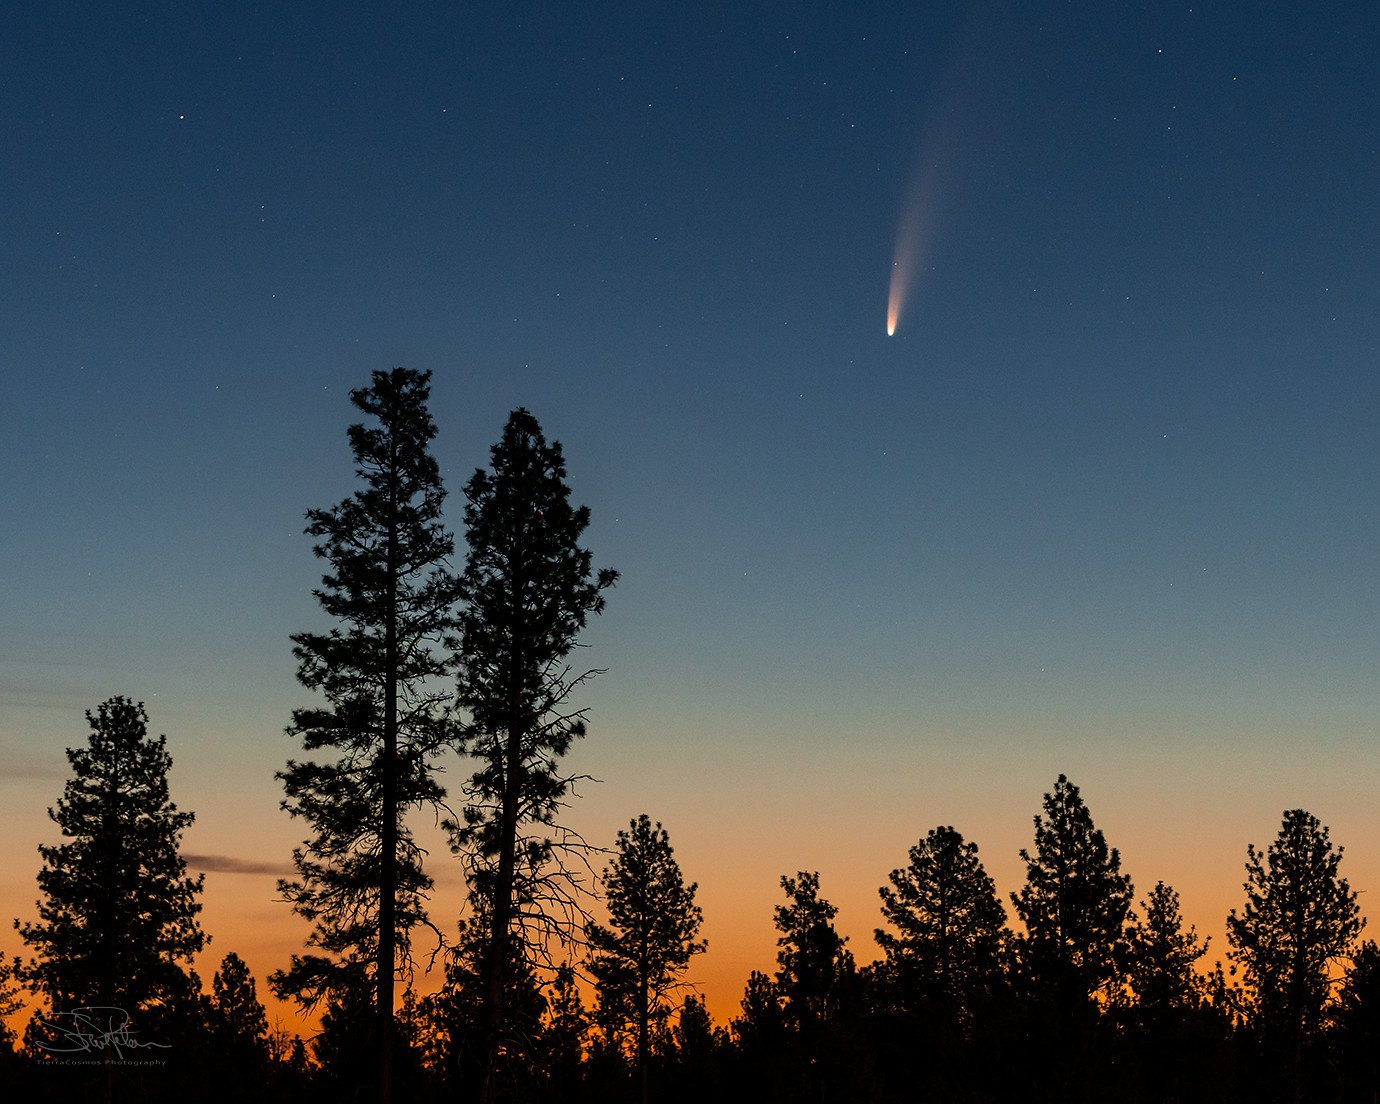 Cometa C/2020 F3 (Neowise) fotografado a partir de Oregon, EUA - Créditos: Steve Peters